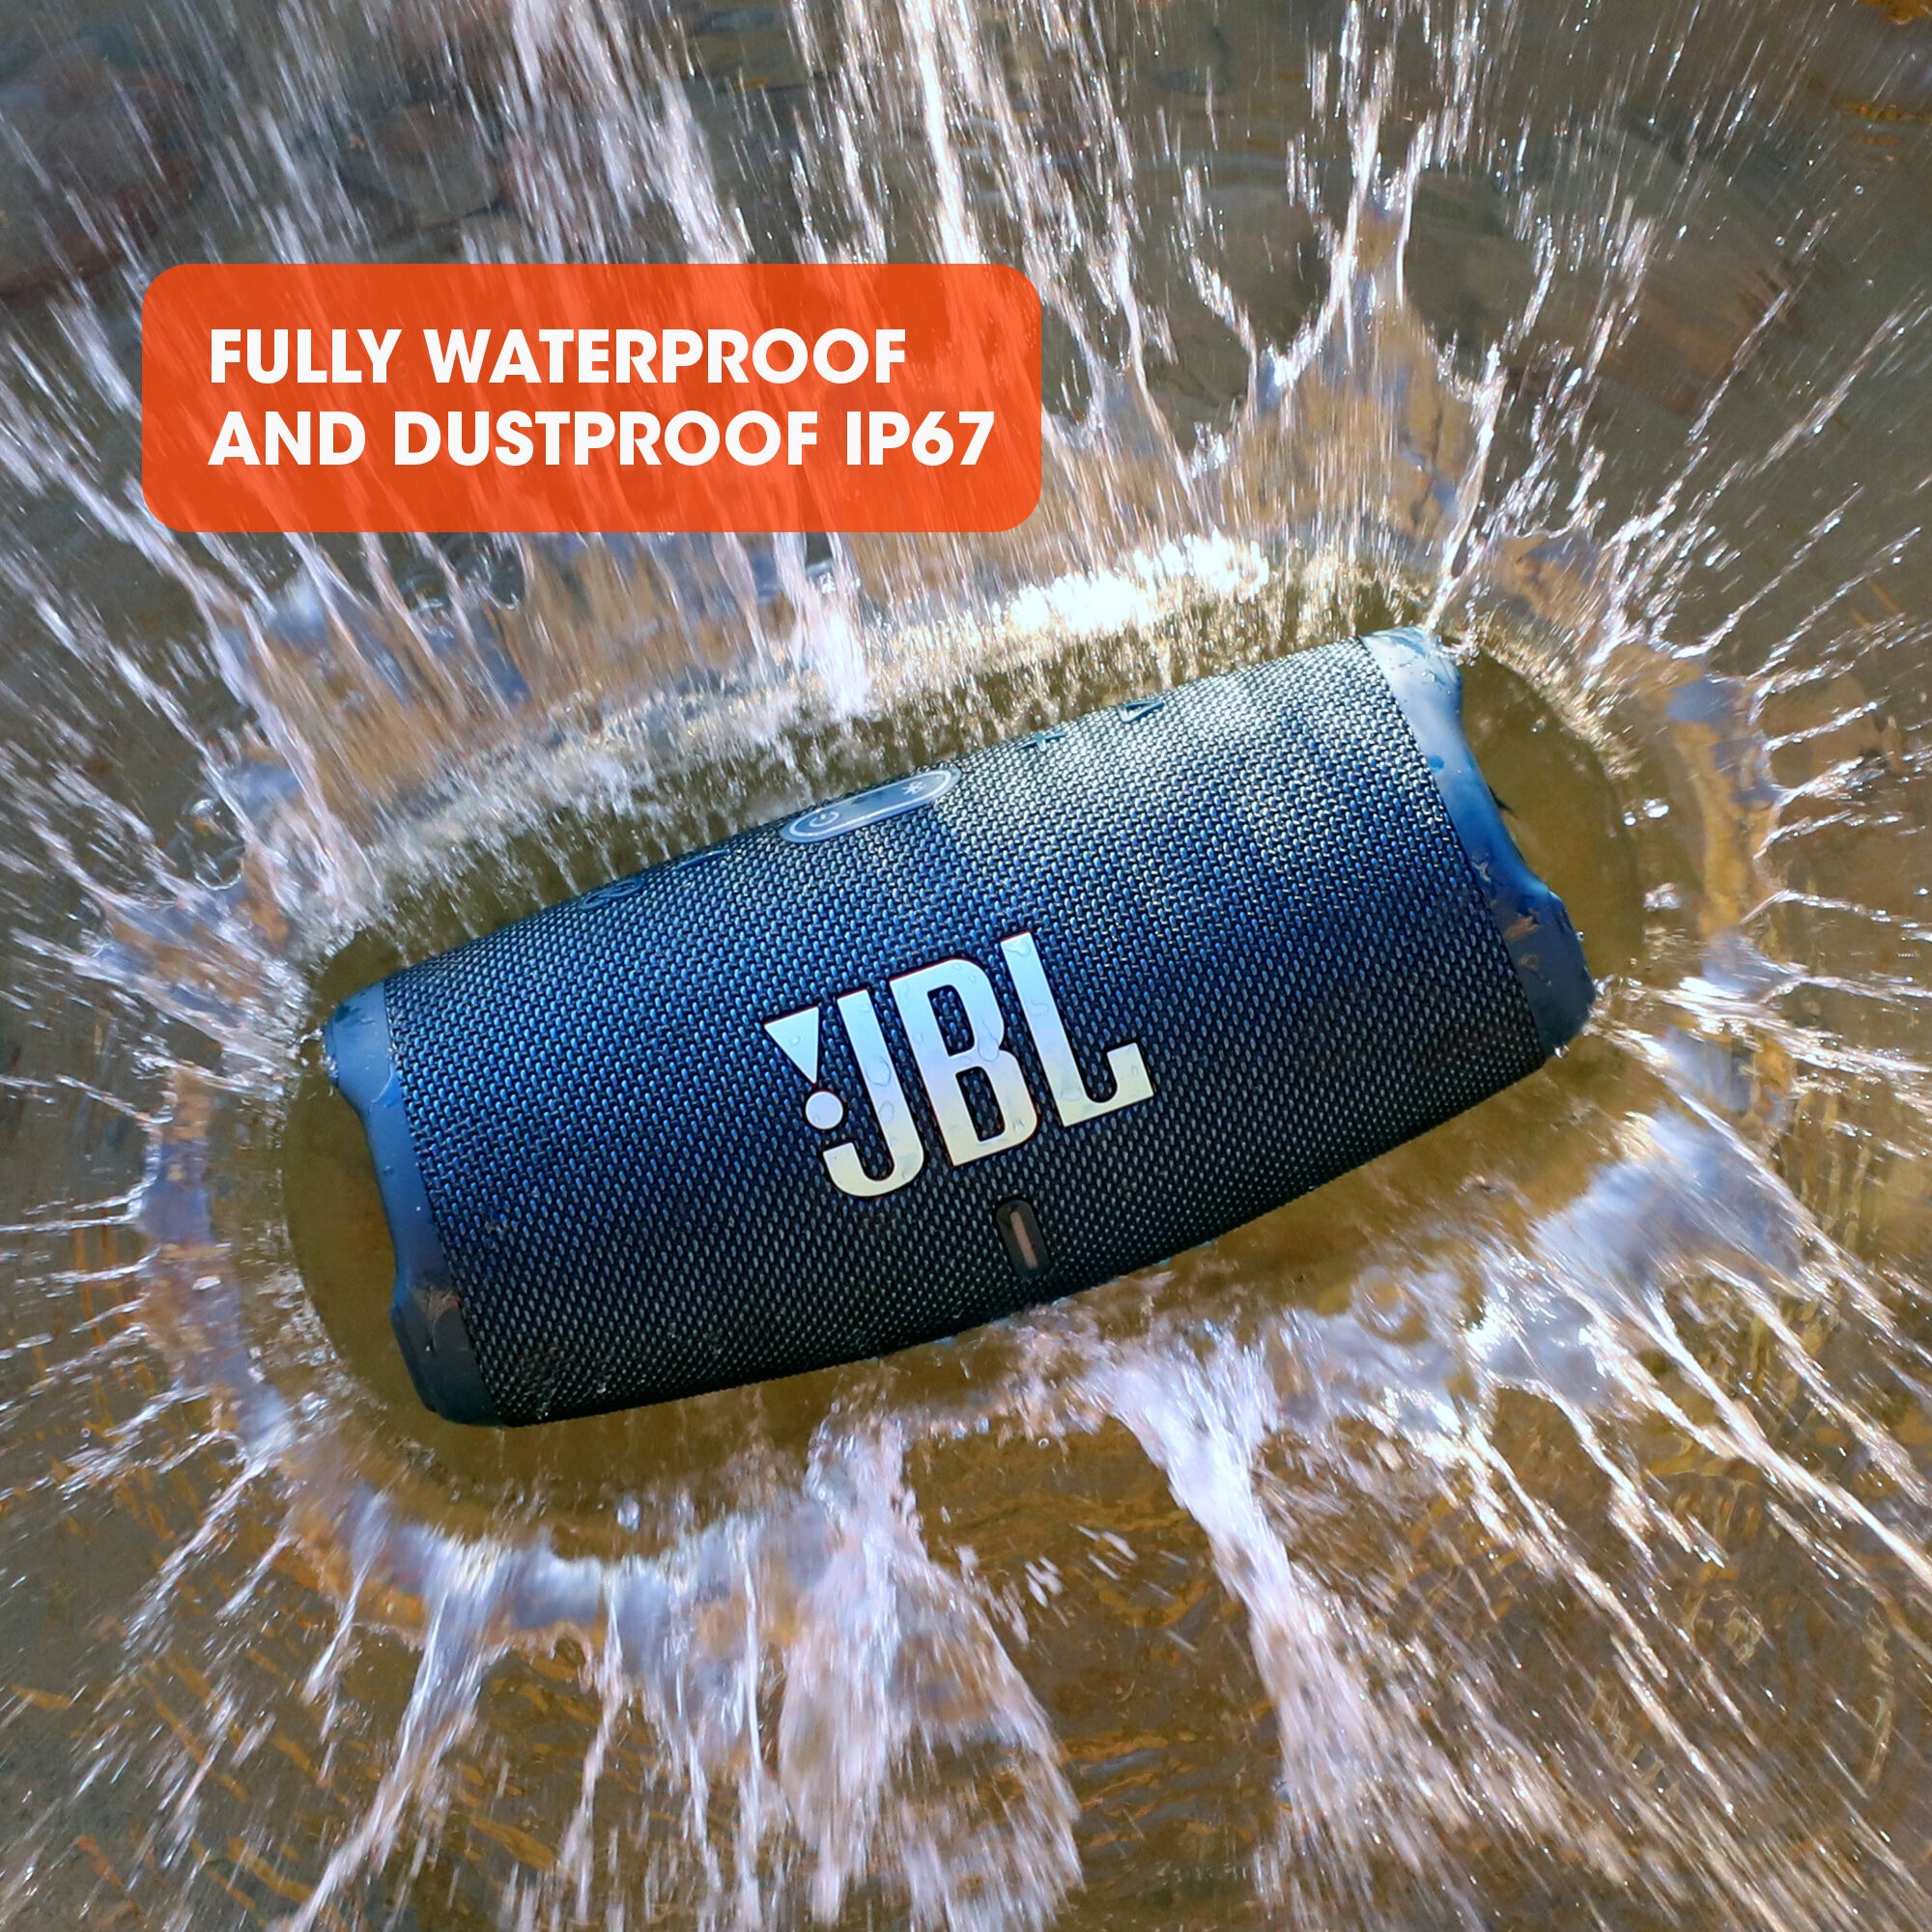 JBL Charge 5 Portable Bluetooth Waterproof Speaker - Blue